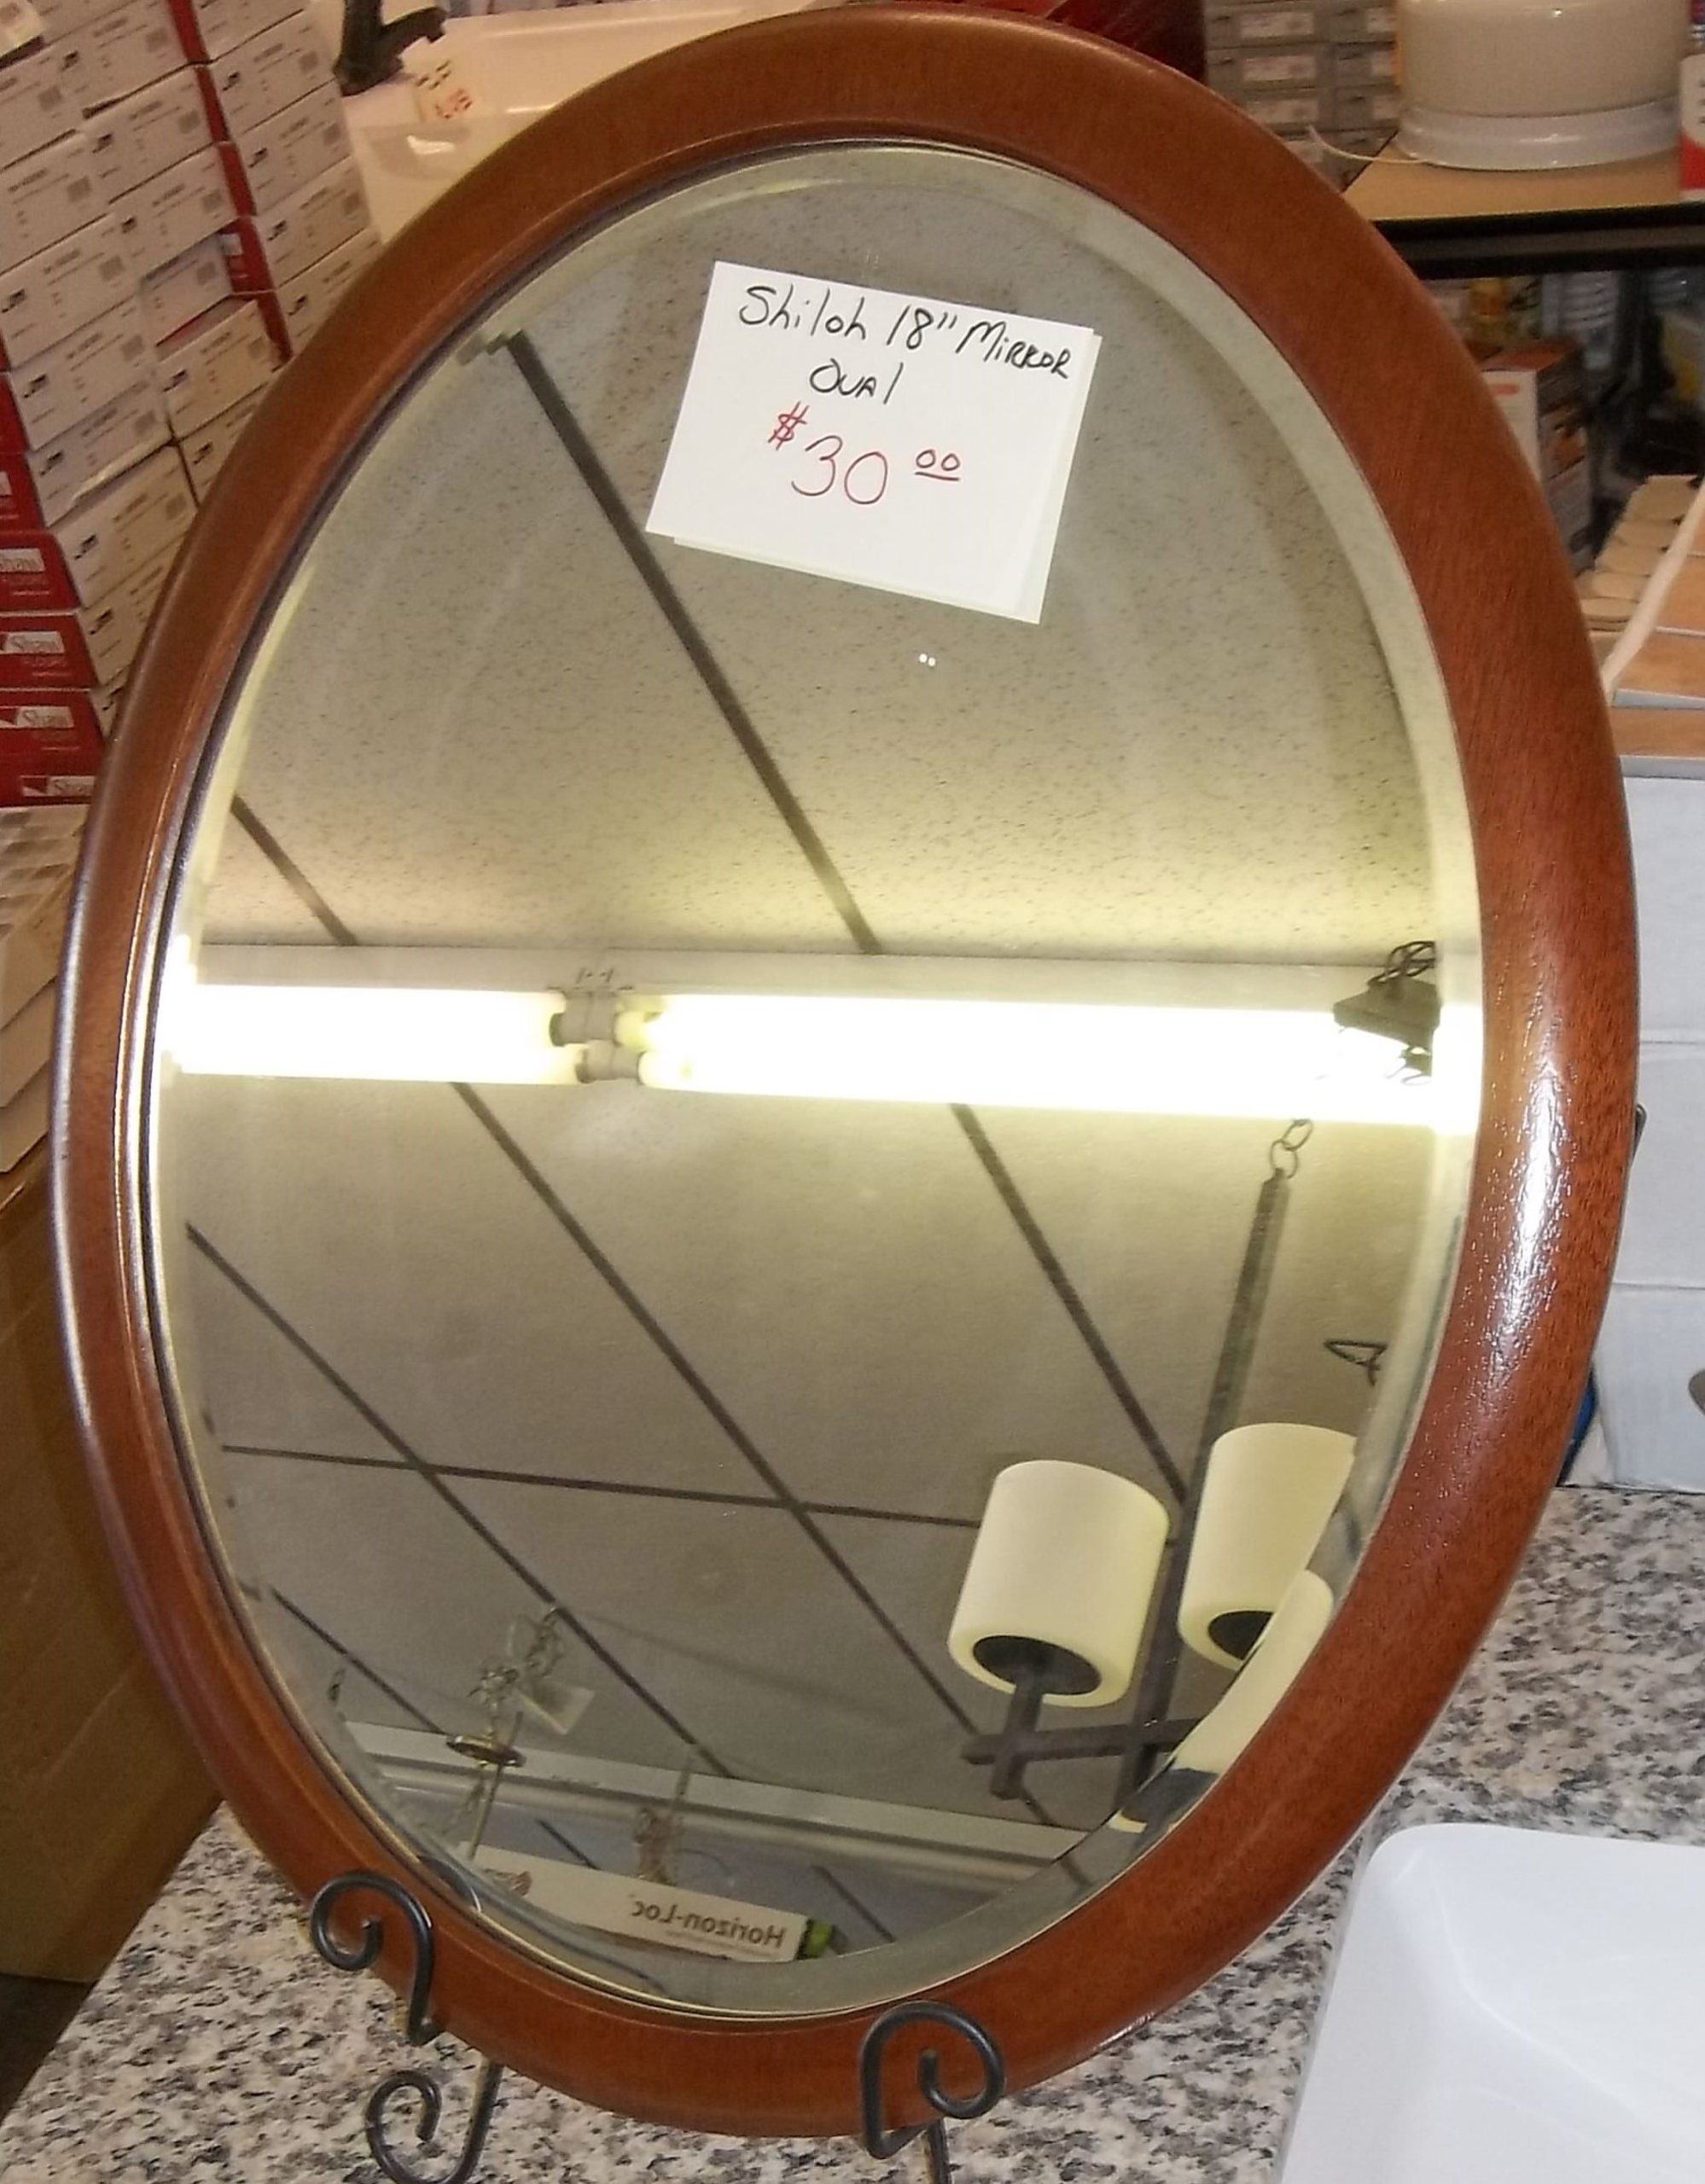 Shiloh Oval Mirror $30